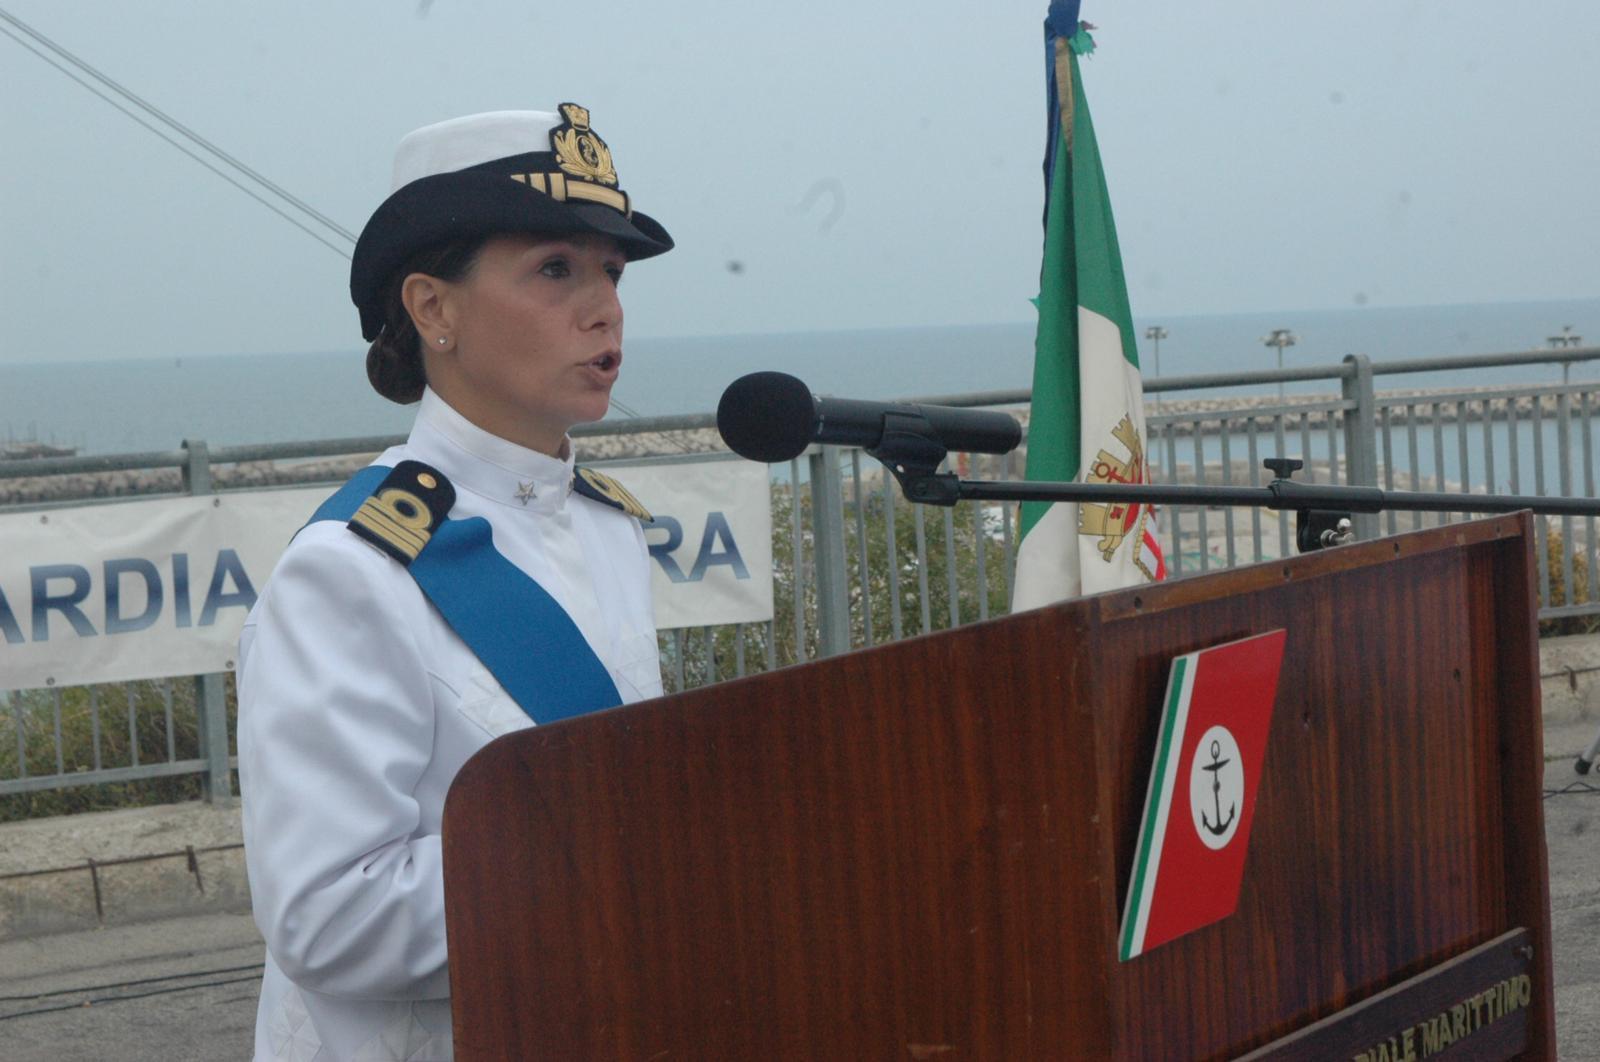 Nuovo comandante alla Guardia costiera di Vasto: per la prima volta è donna